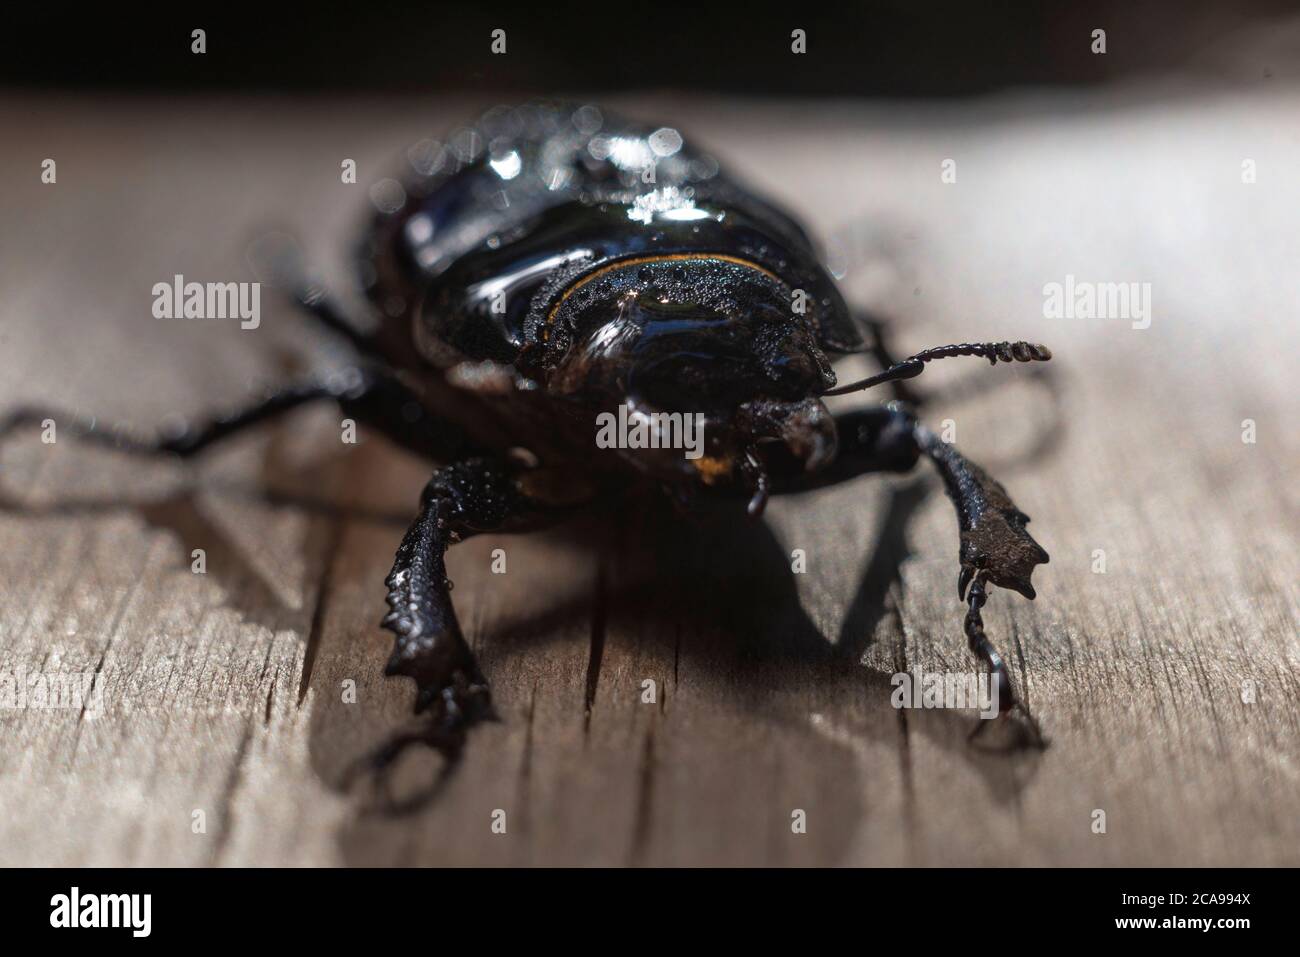 Nahaufnahme eines großen braunen Käfers mit Hörnern, auf einem hölzernen Hintergrund, im Regen. Käfer Insekten Bugs Japanisches Nashorn Stockfoto